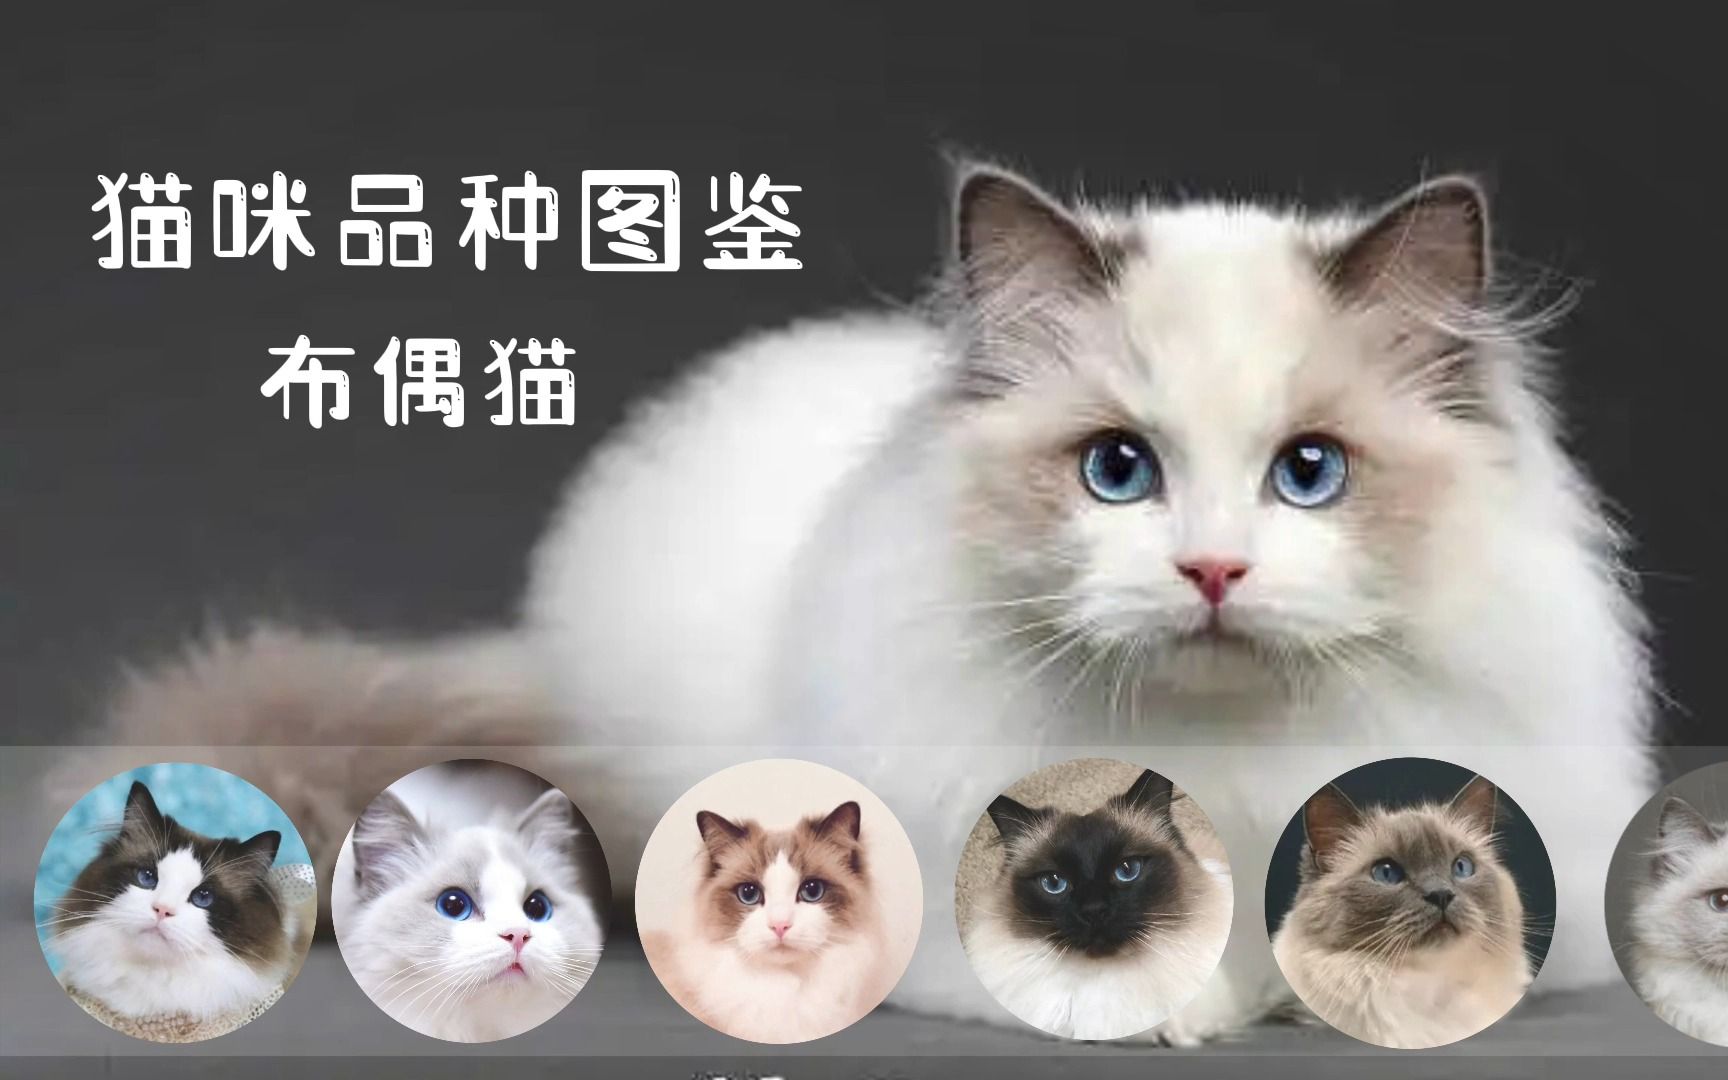 猫咪品种图鉴-----布偶猫